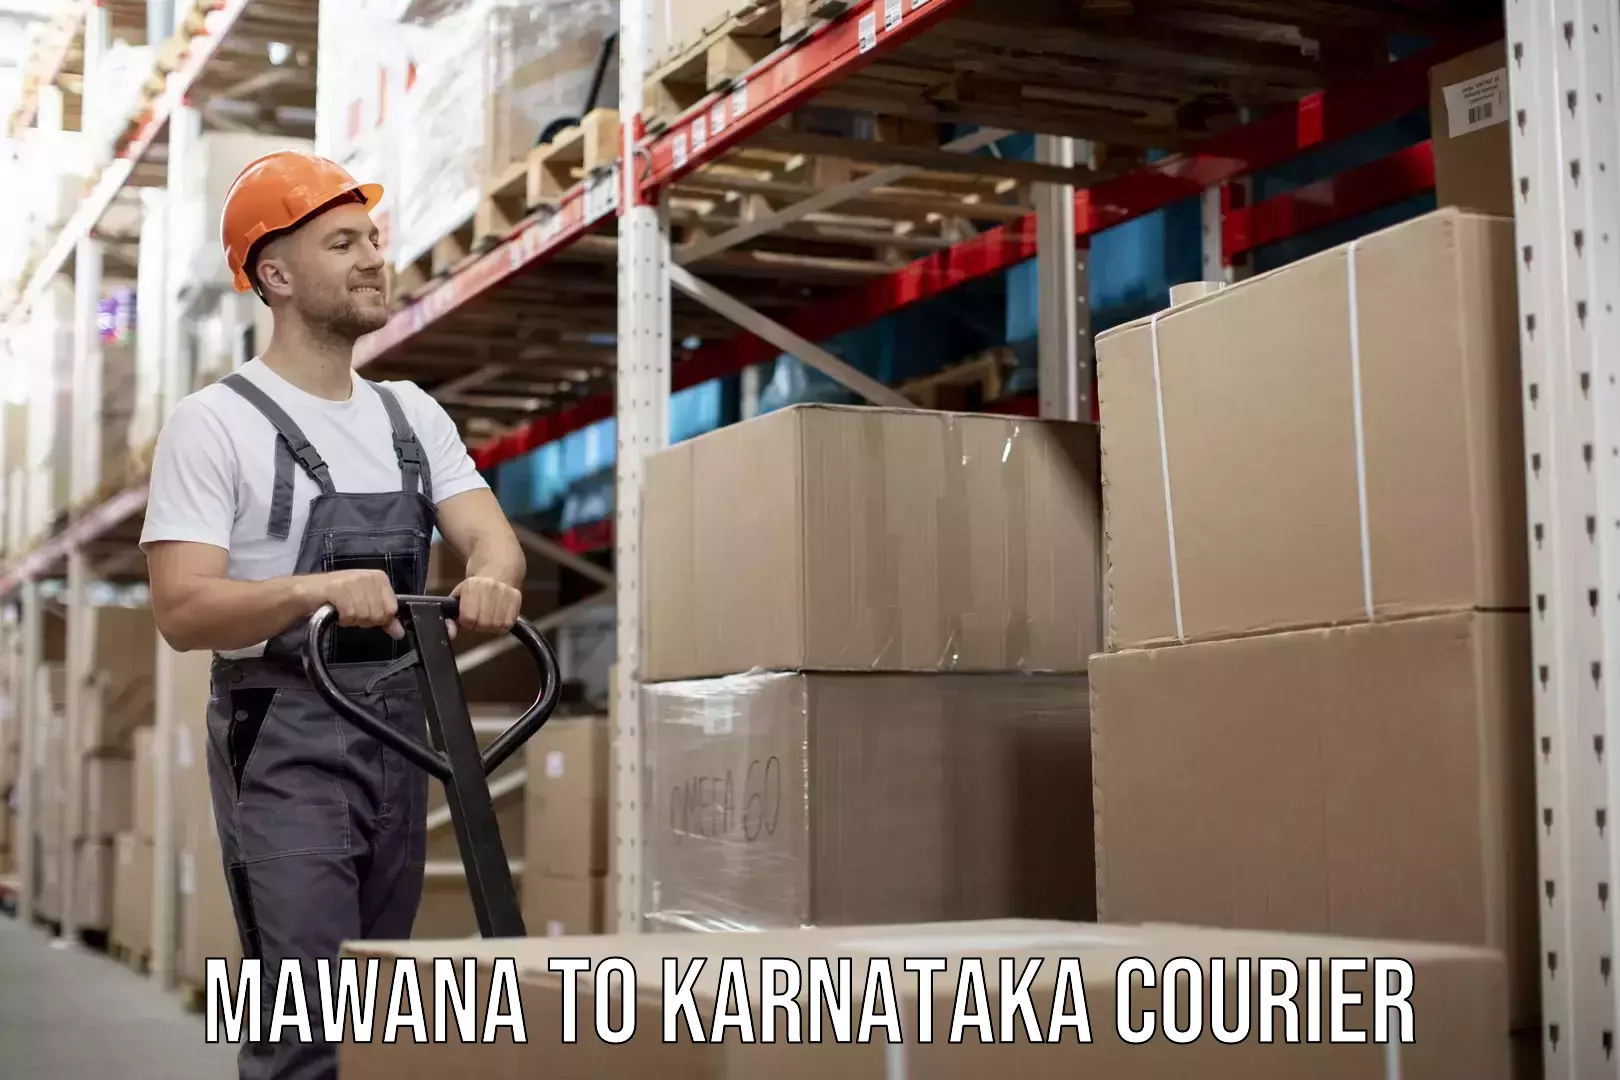 Quick household relocation Mawana to Karnataka